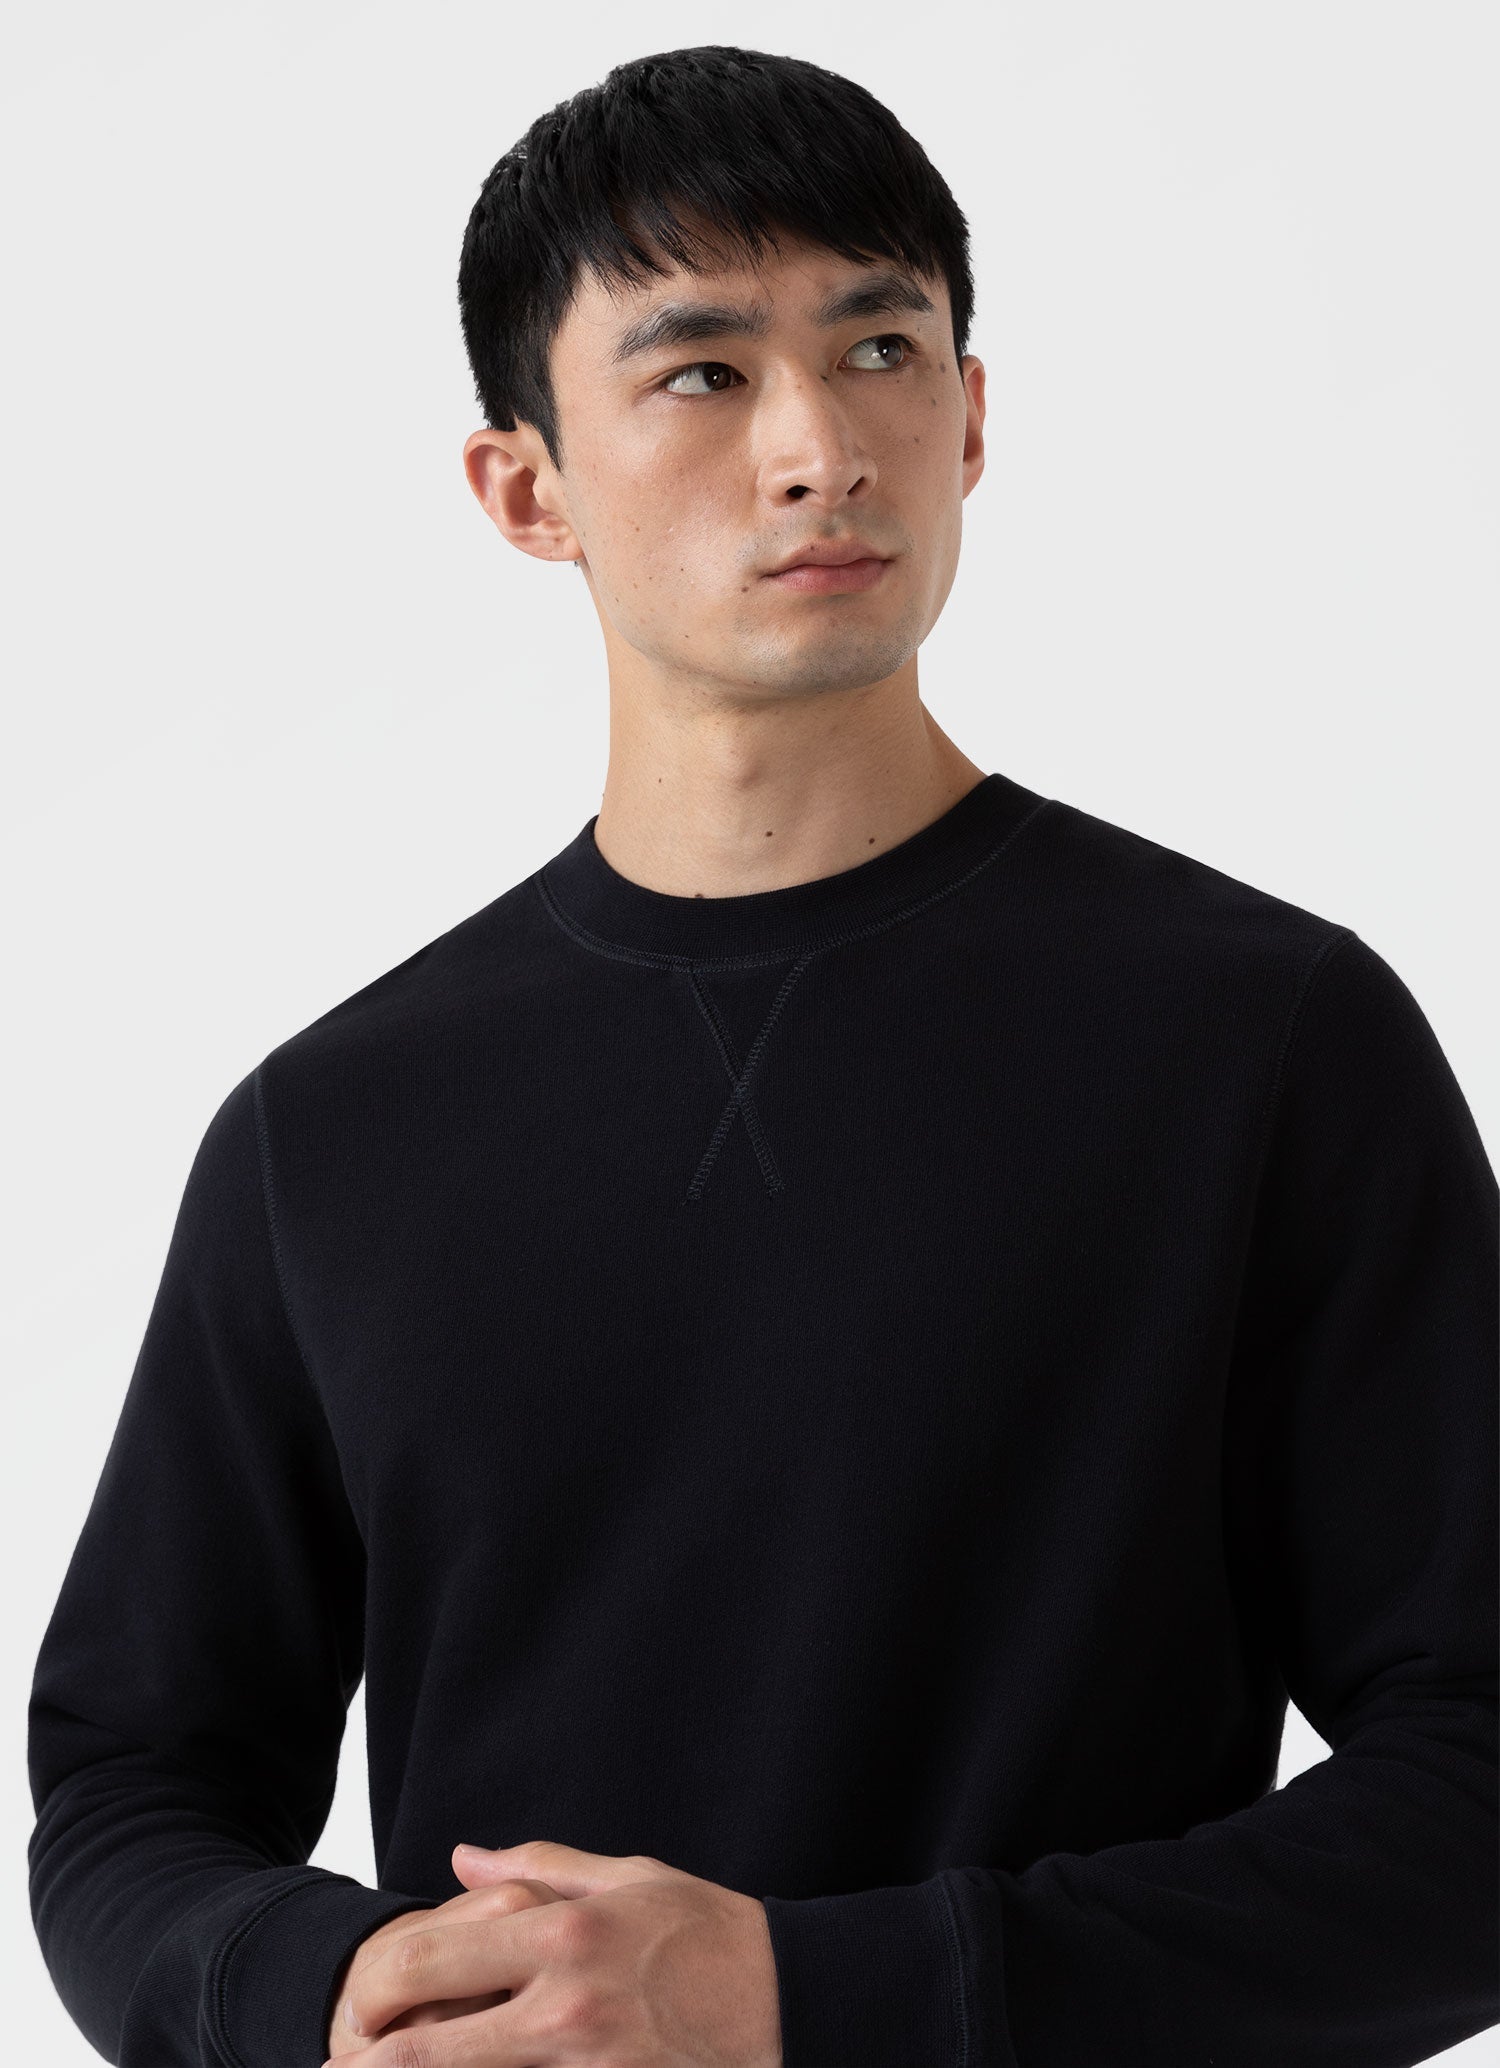 Jordan Essentials Men's Loopback Fleece Crew-Neck Sweatshirt. Nike PH